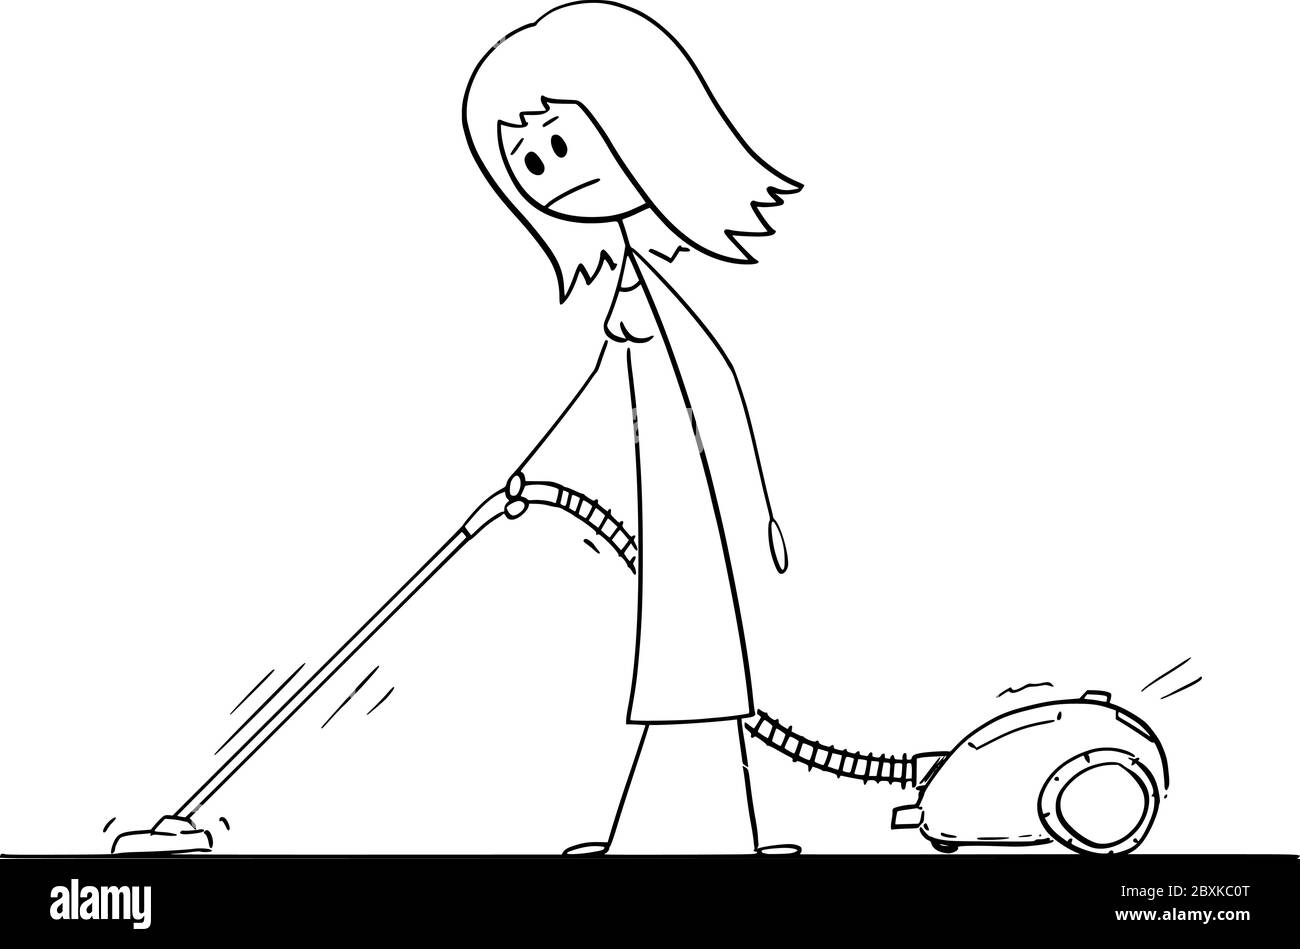 Vektor Cartoon Stick Figur Zeichnung konzeptionelle Illustration von Frau saugen oder Reinigung der Boden oder Teppich mit Staubsauger oder staubsauger. Stock Vektor